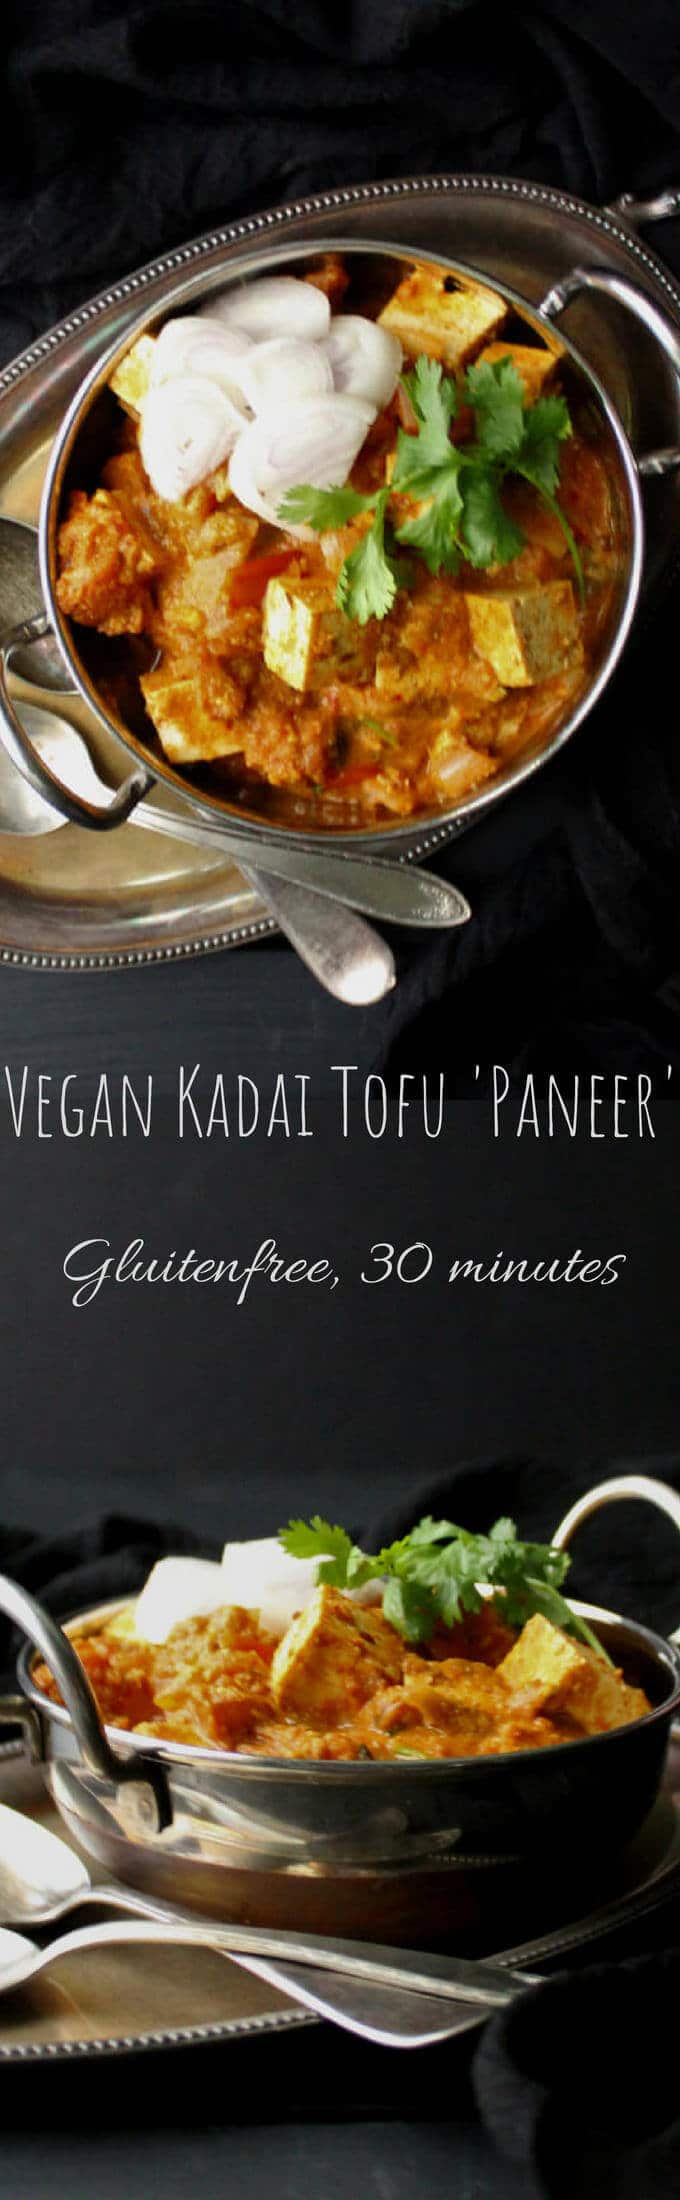 Vegan Kadai Tofu Paneer images with text inlay that says "vegan kadai tofu paneer, glutenfree, 30 minutes"